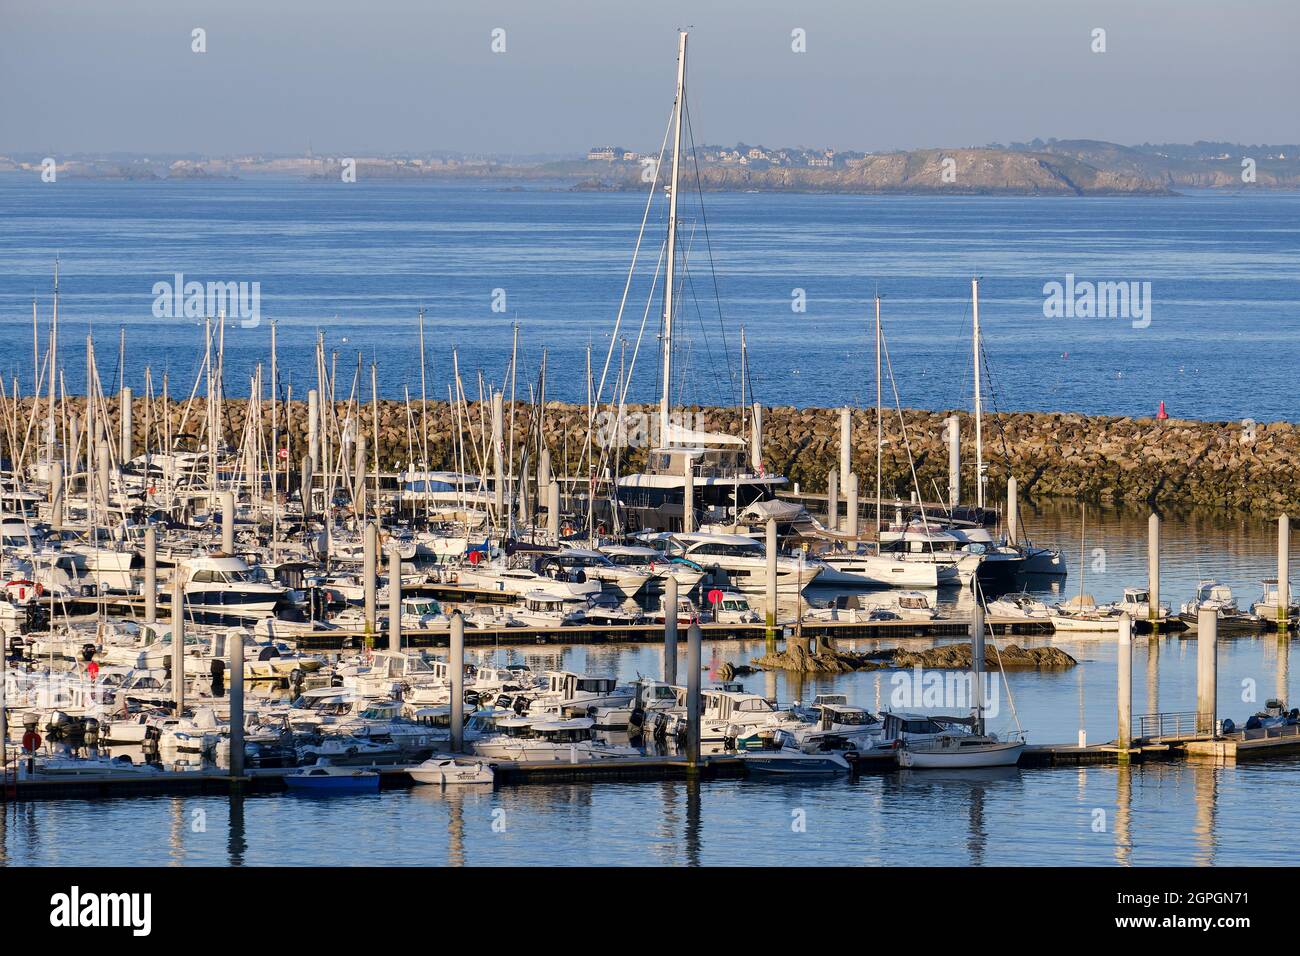 France, Cotes d'Armor, Cote d'Emeraude (Emerald Coast), Saint Cast le Guildo, the port Stock Photo